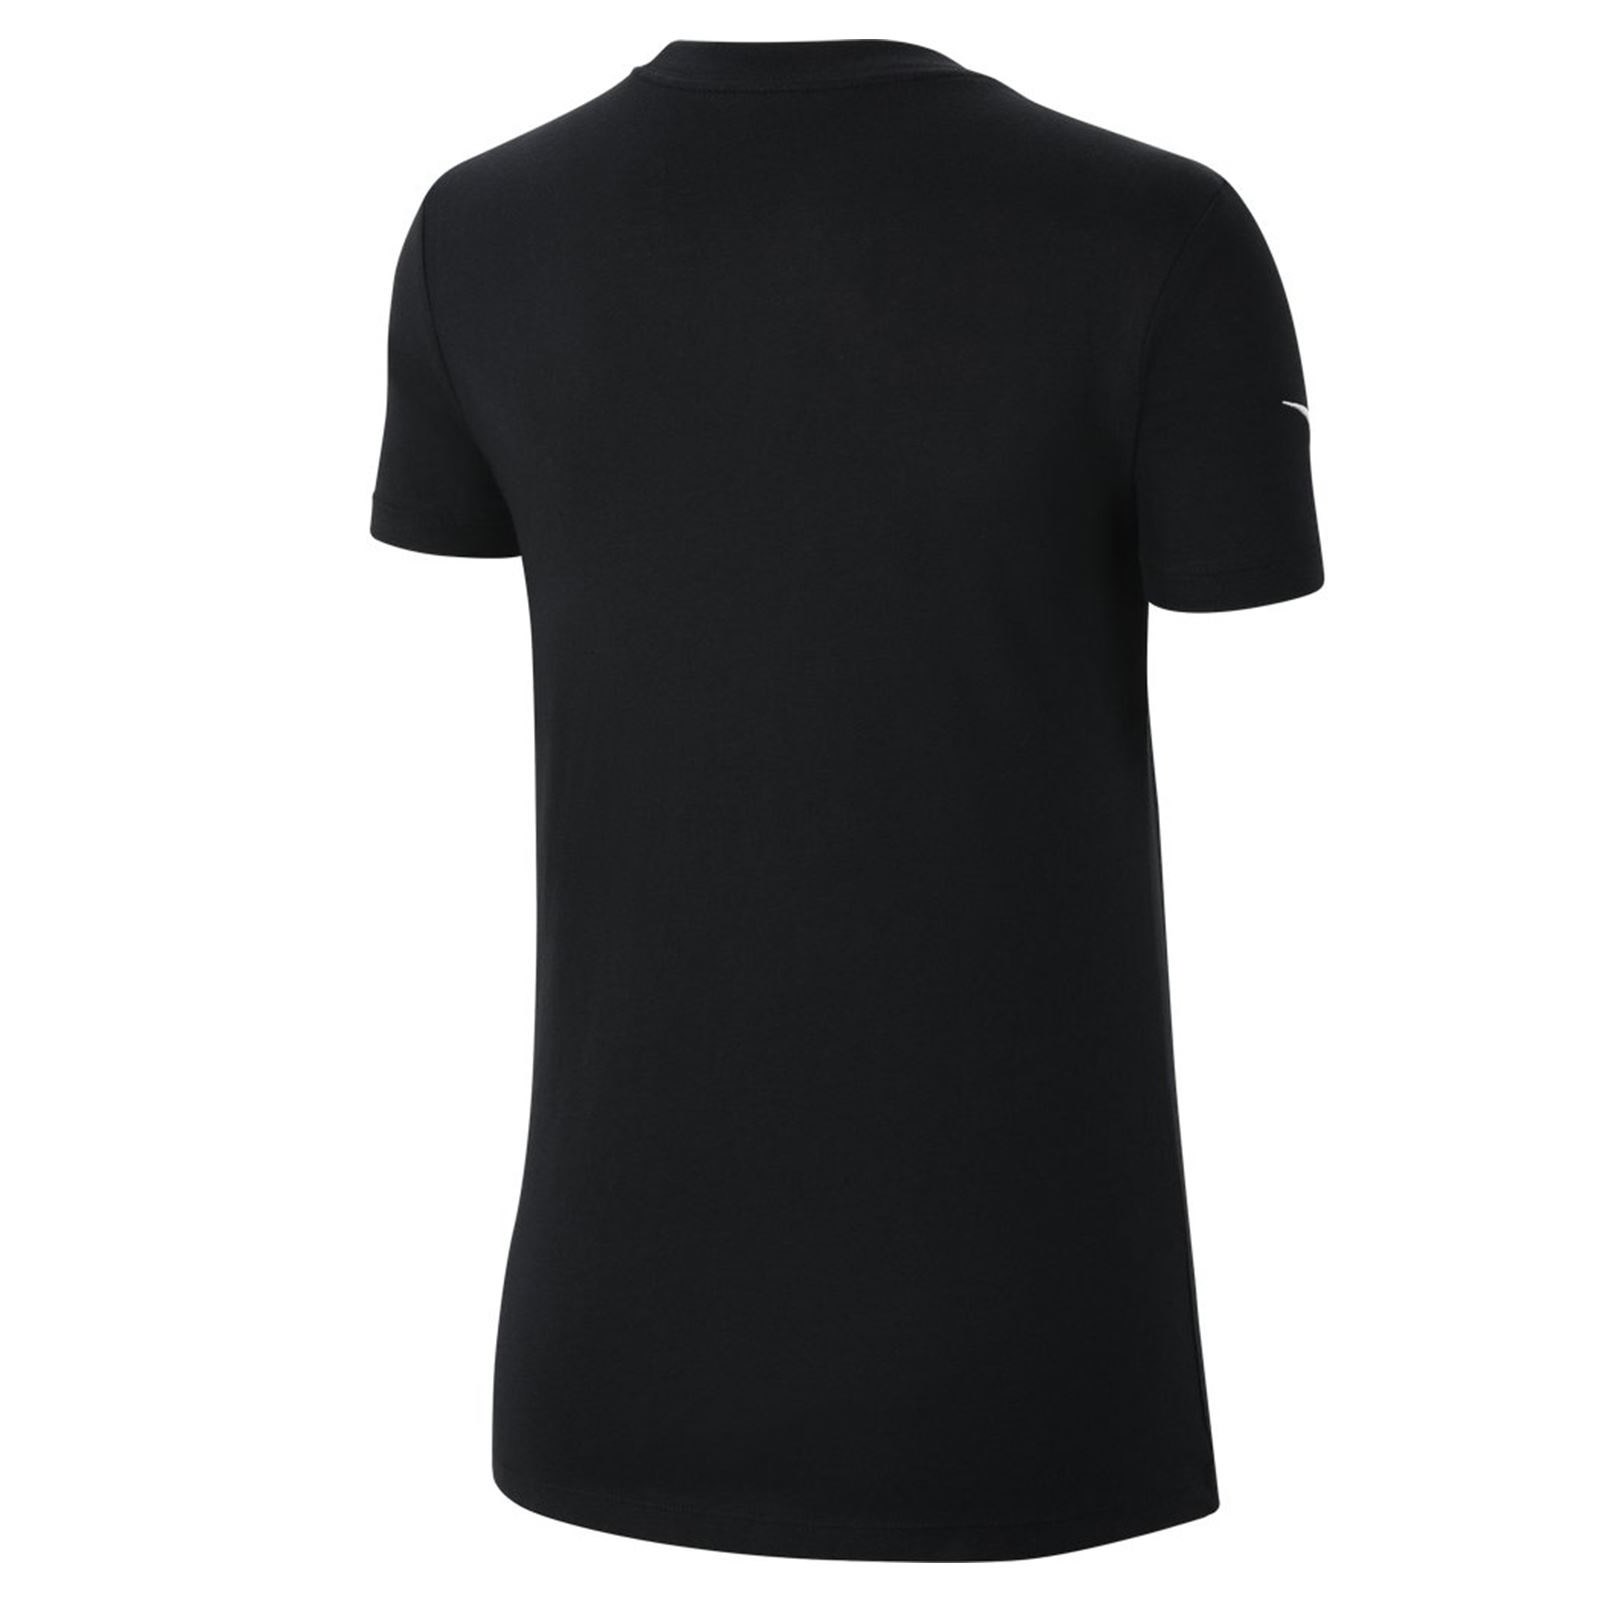 Nike W Nk Park20 Ss Tee Kadın Siyah Futbol Tişört Black - White